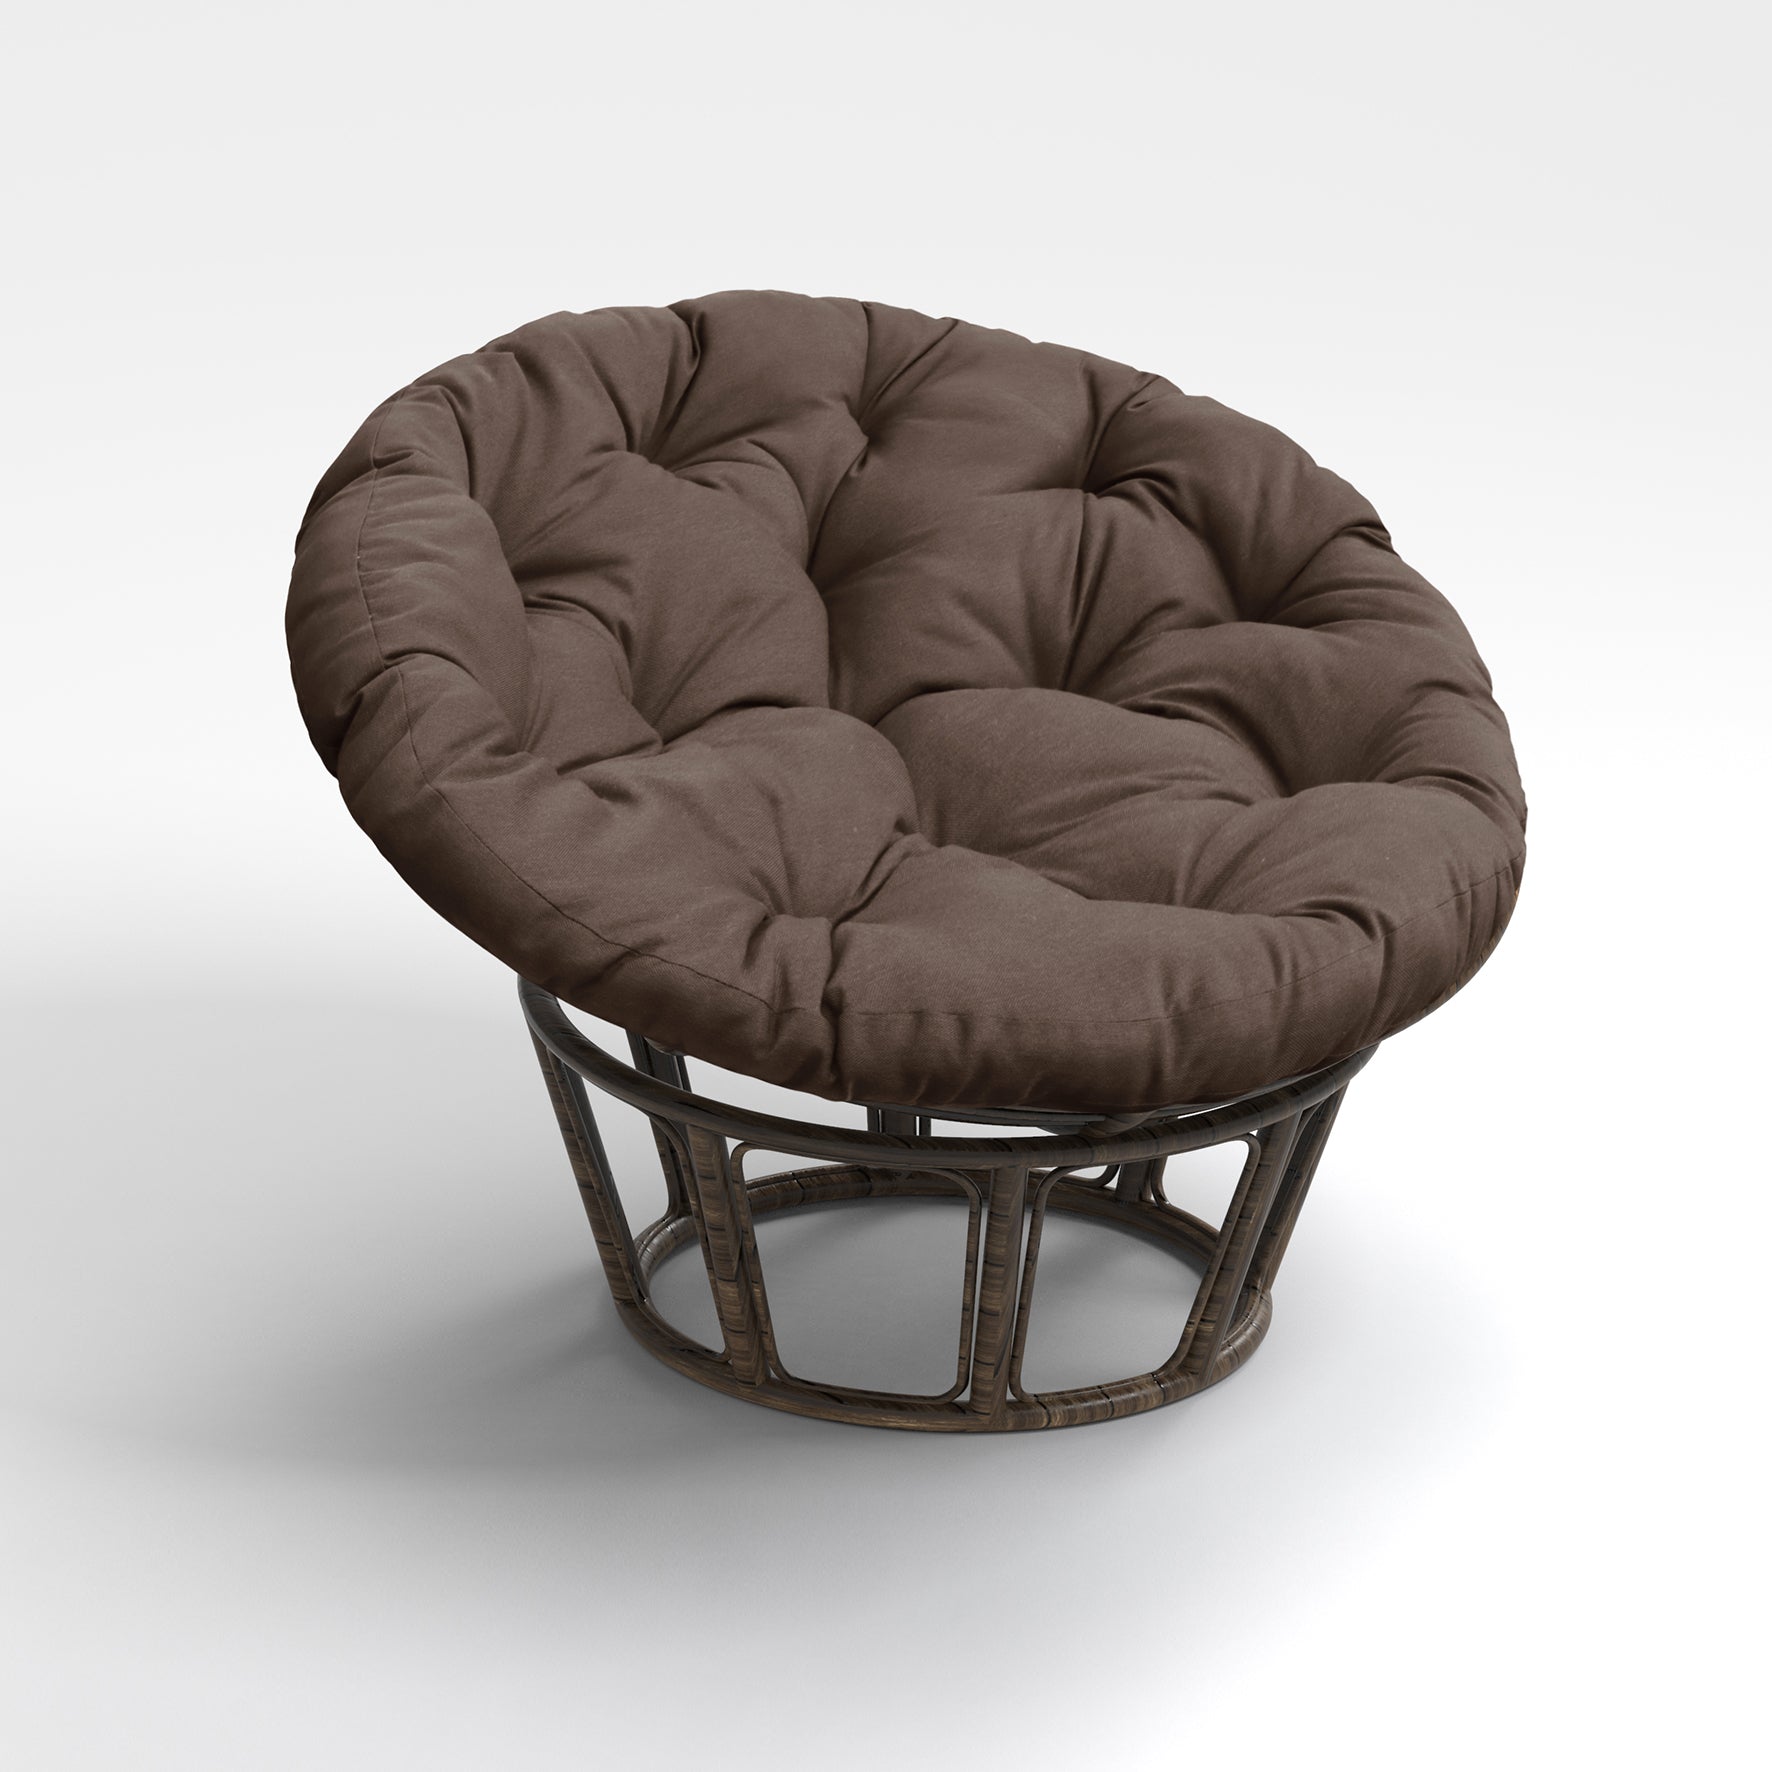 Papasan Chair Cushion Ground Cushions 44 inches Olefin Coffee/Chocolate